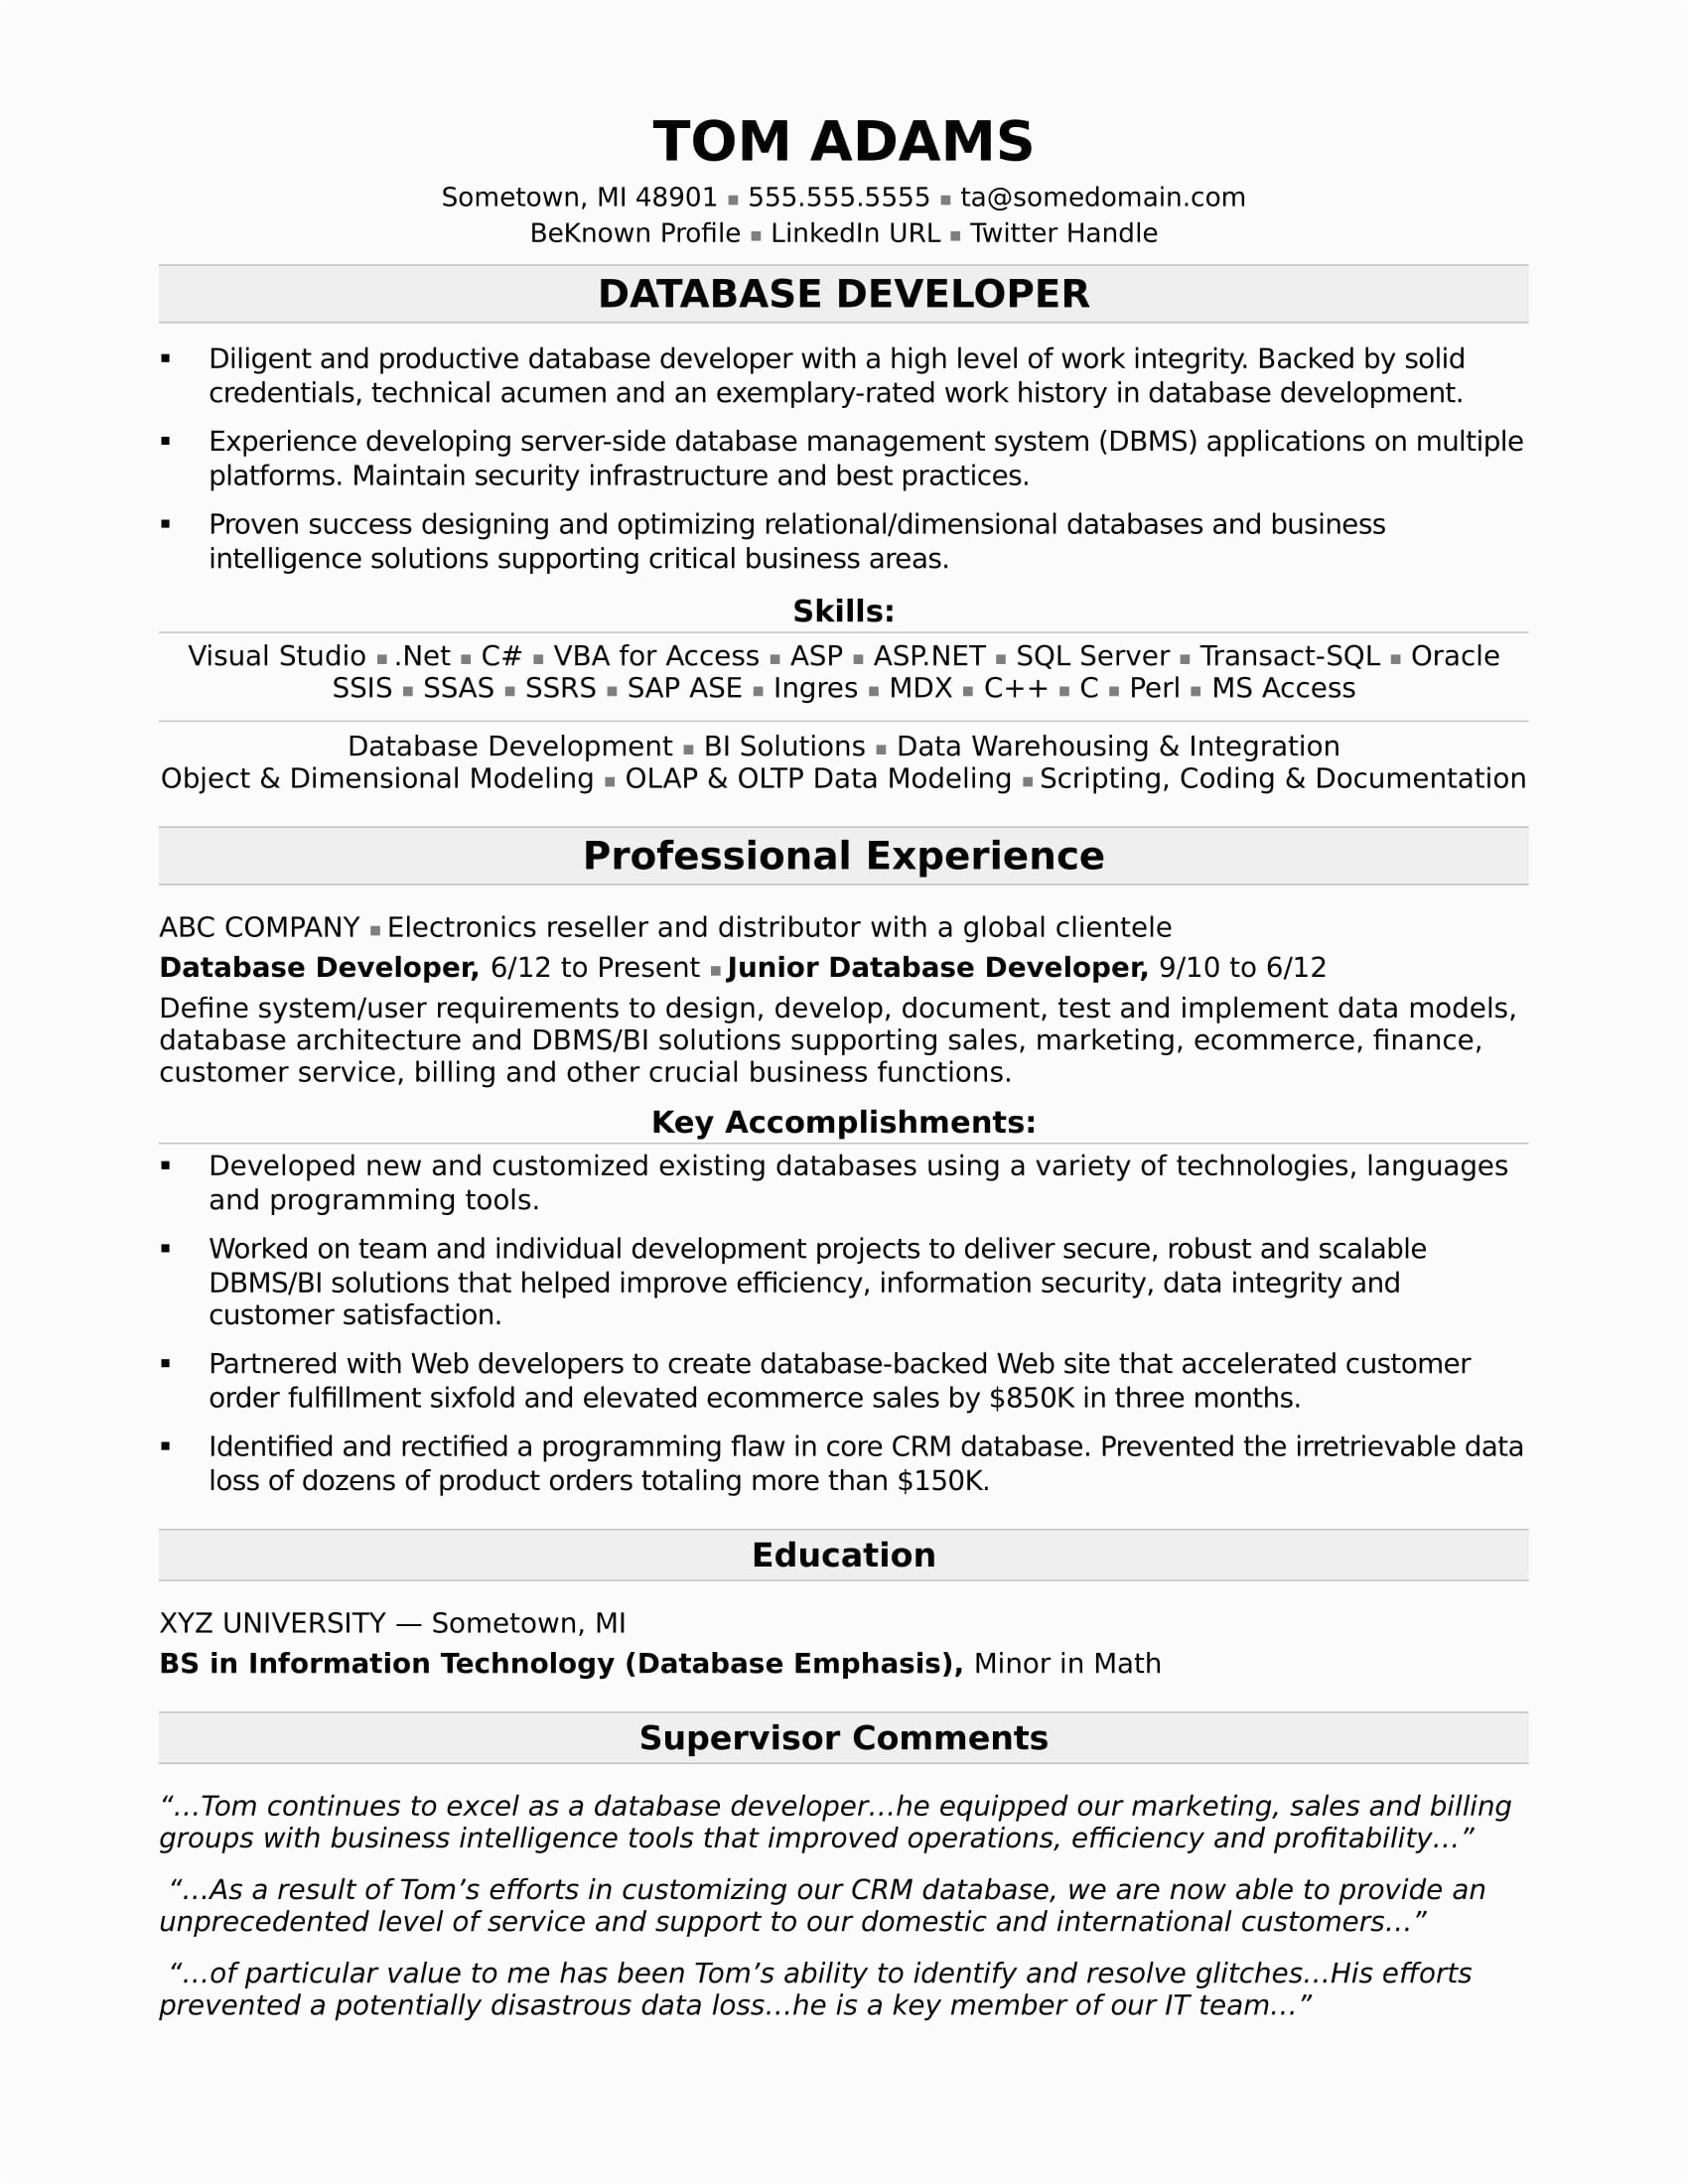 Sample Resume for Biomaker Development and assays Sample Resume for A Midlevel It Developer